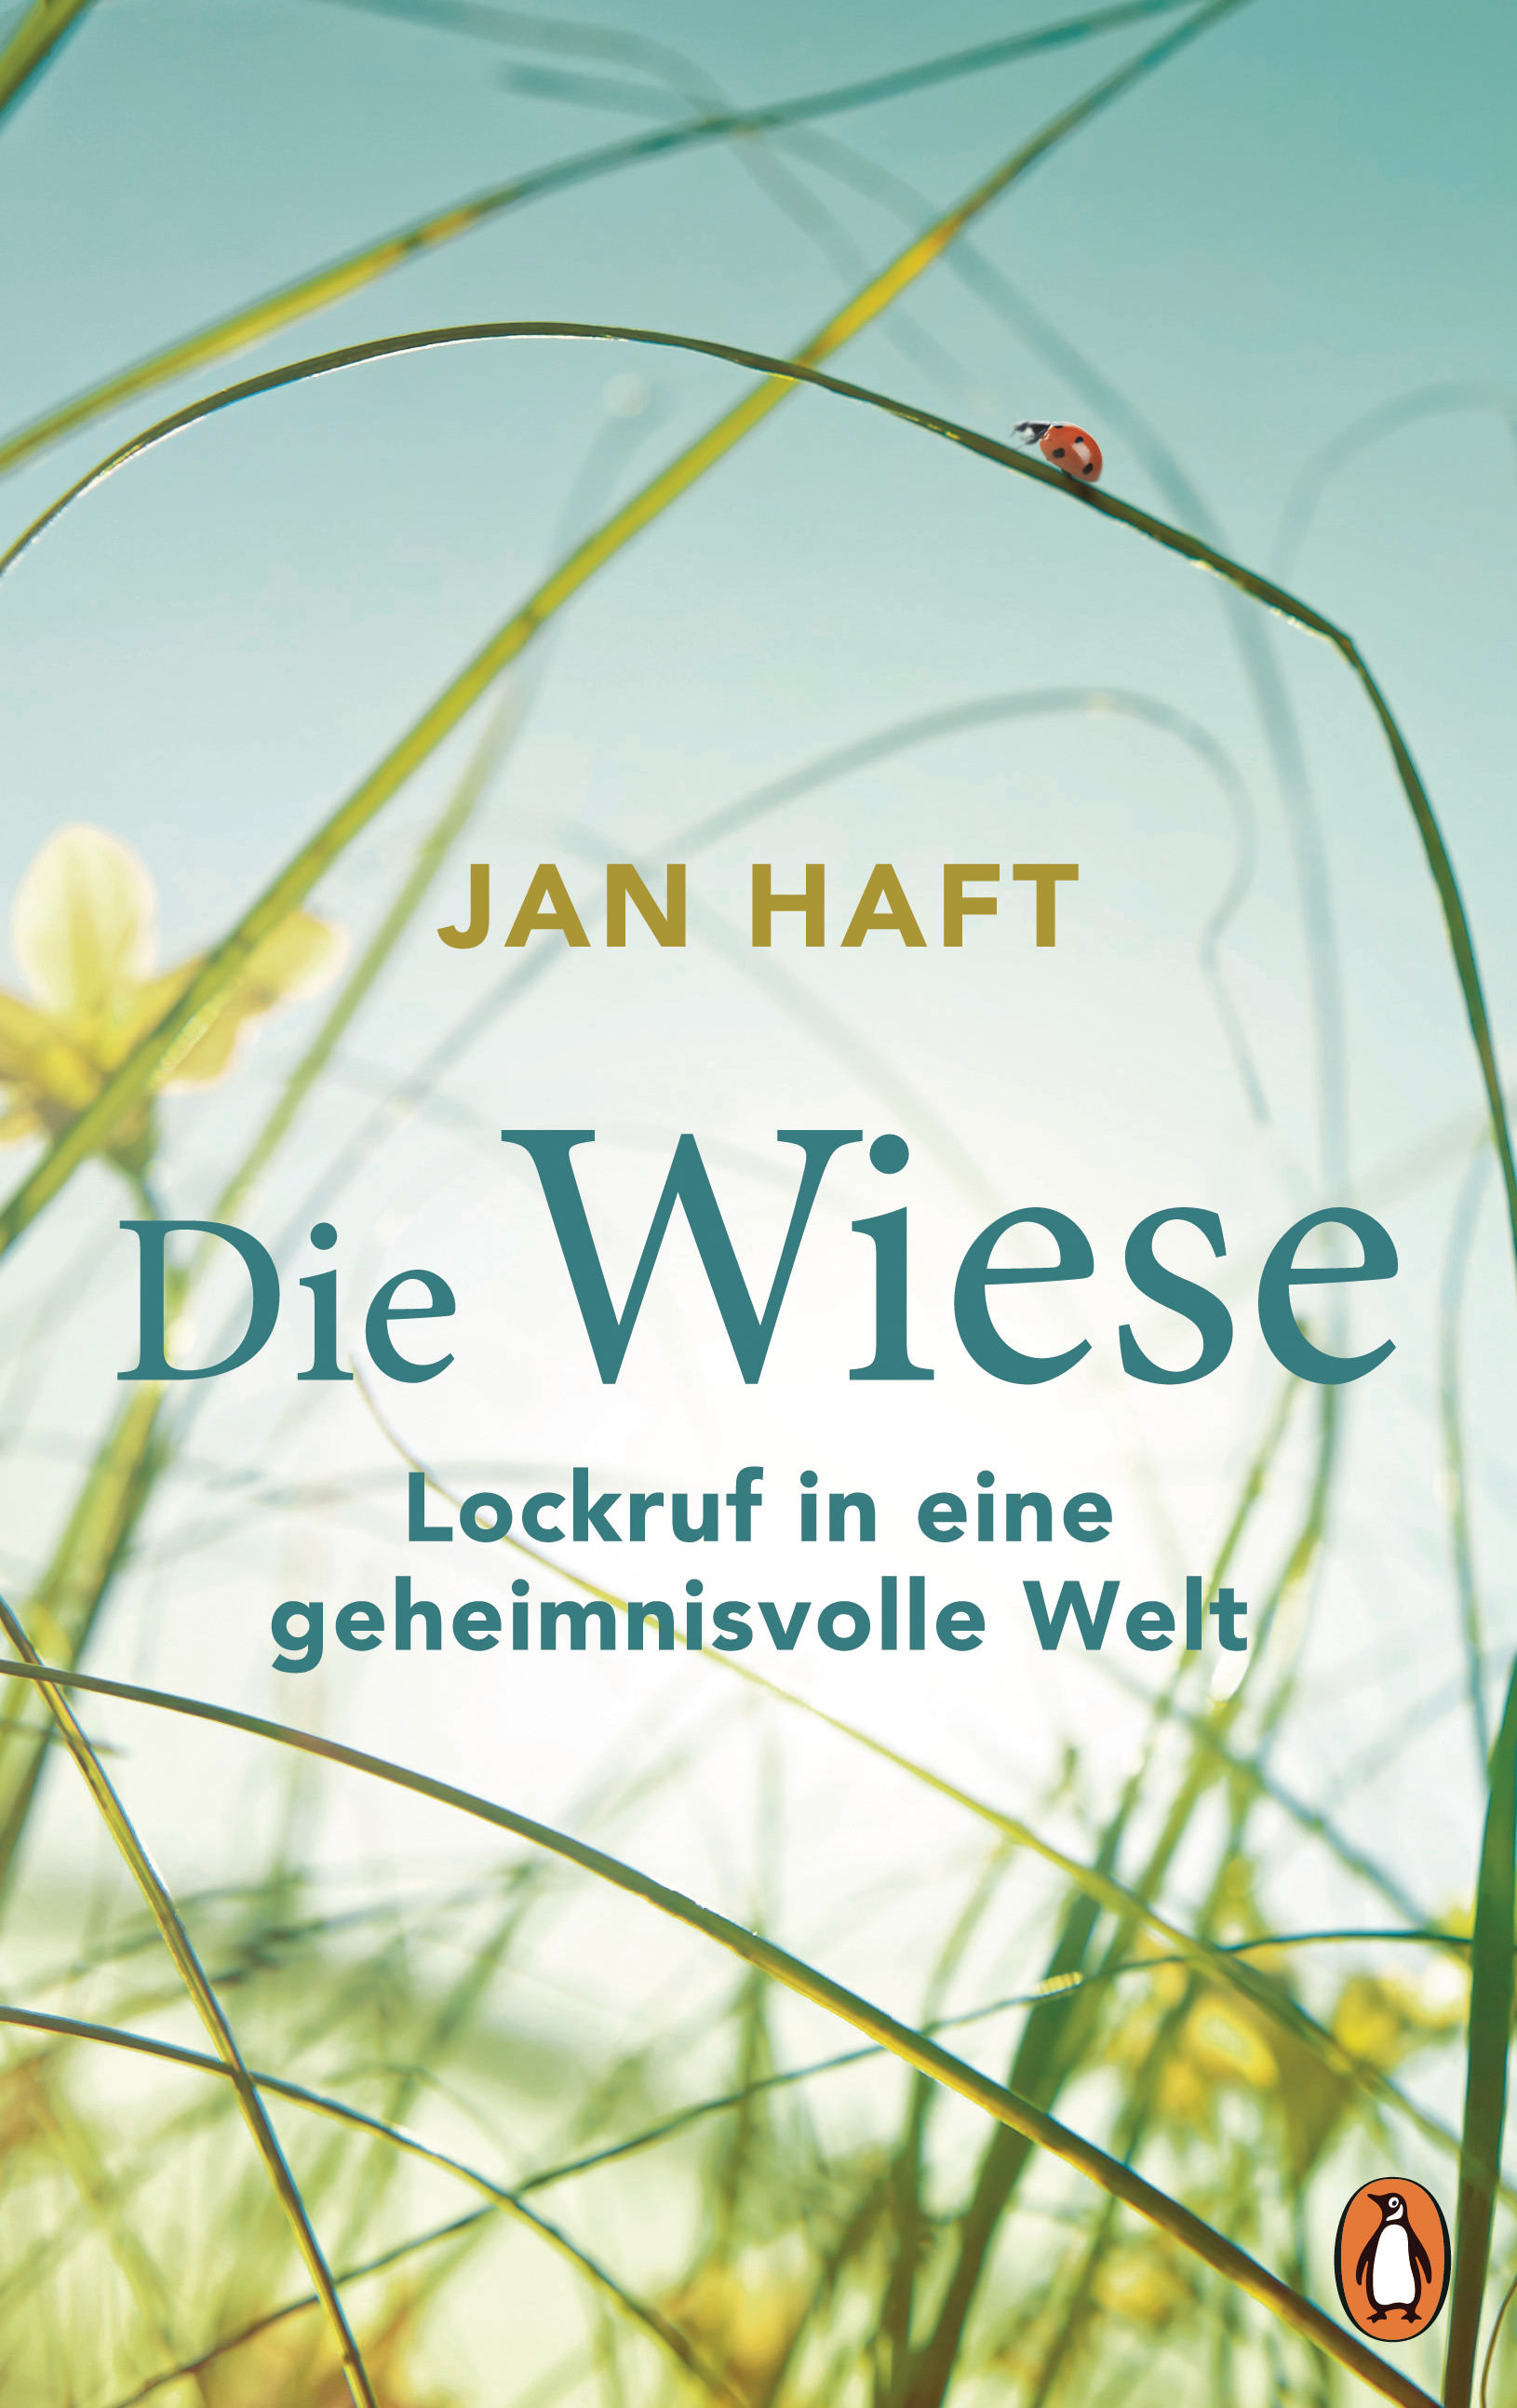 Jan Haft: Die Wiese